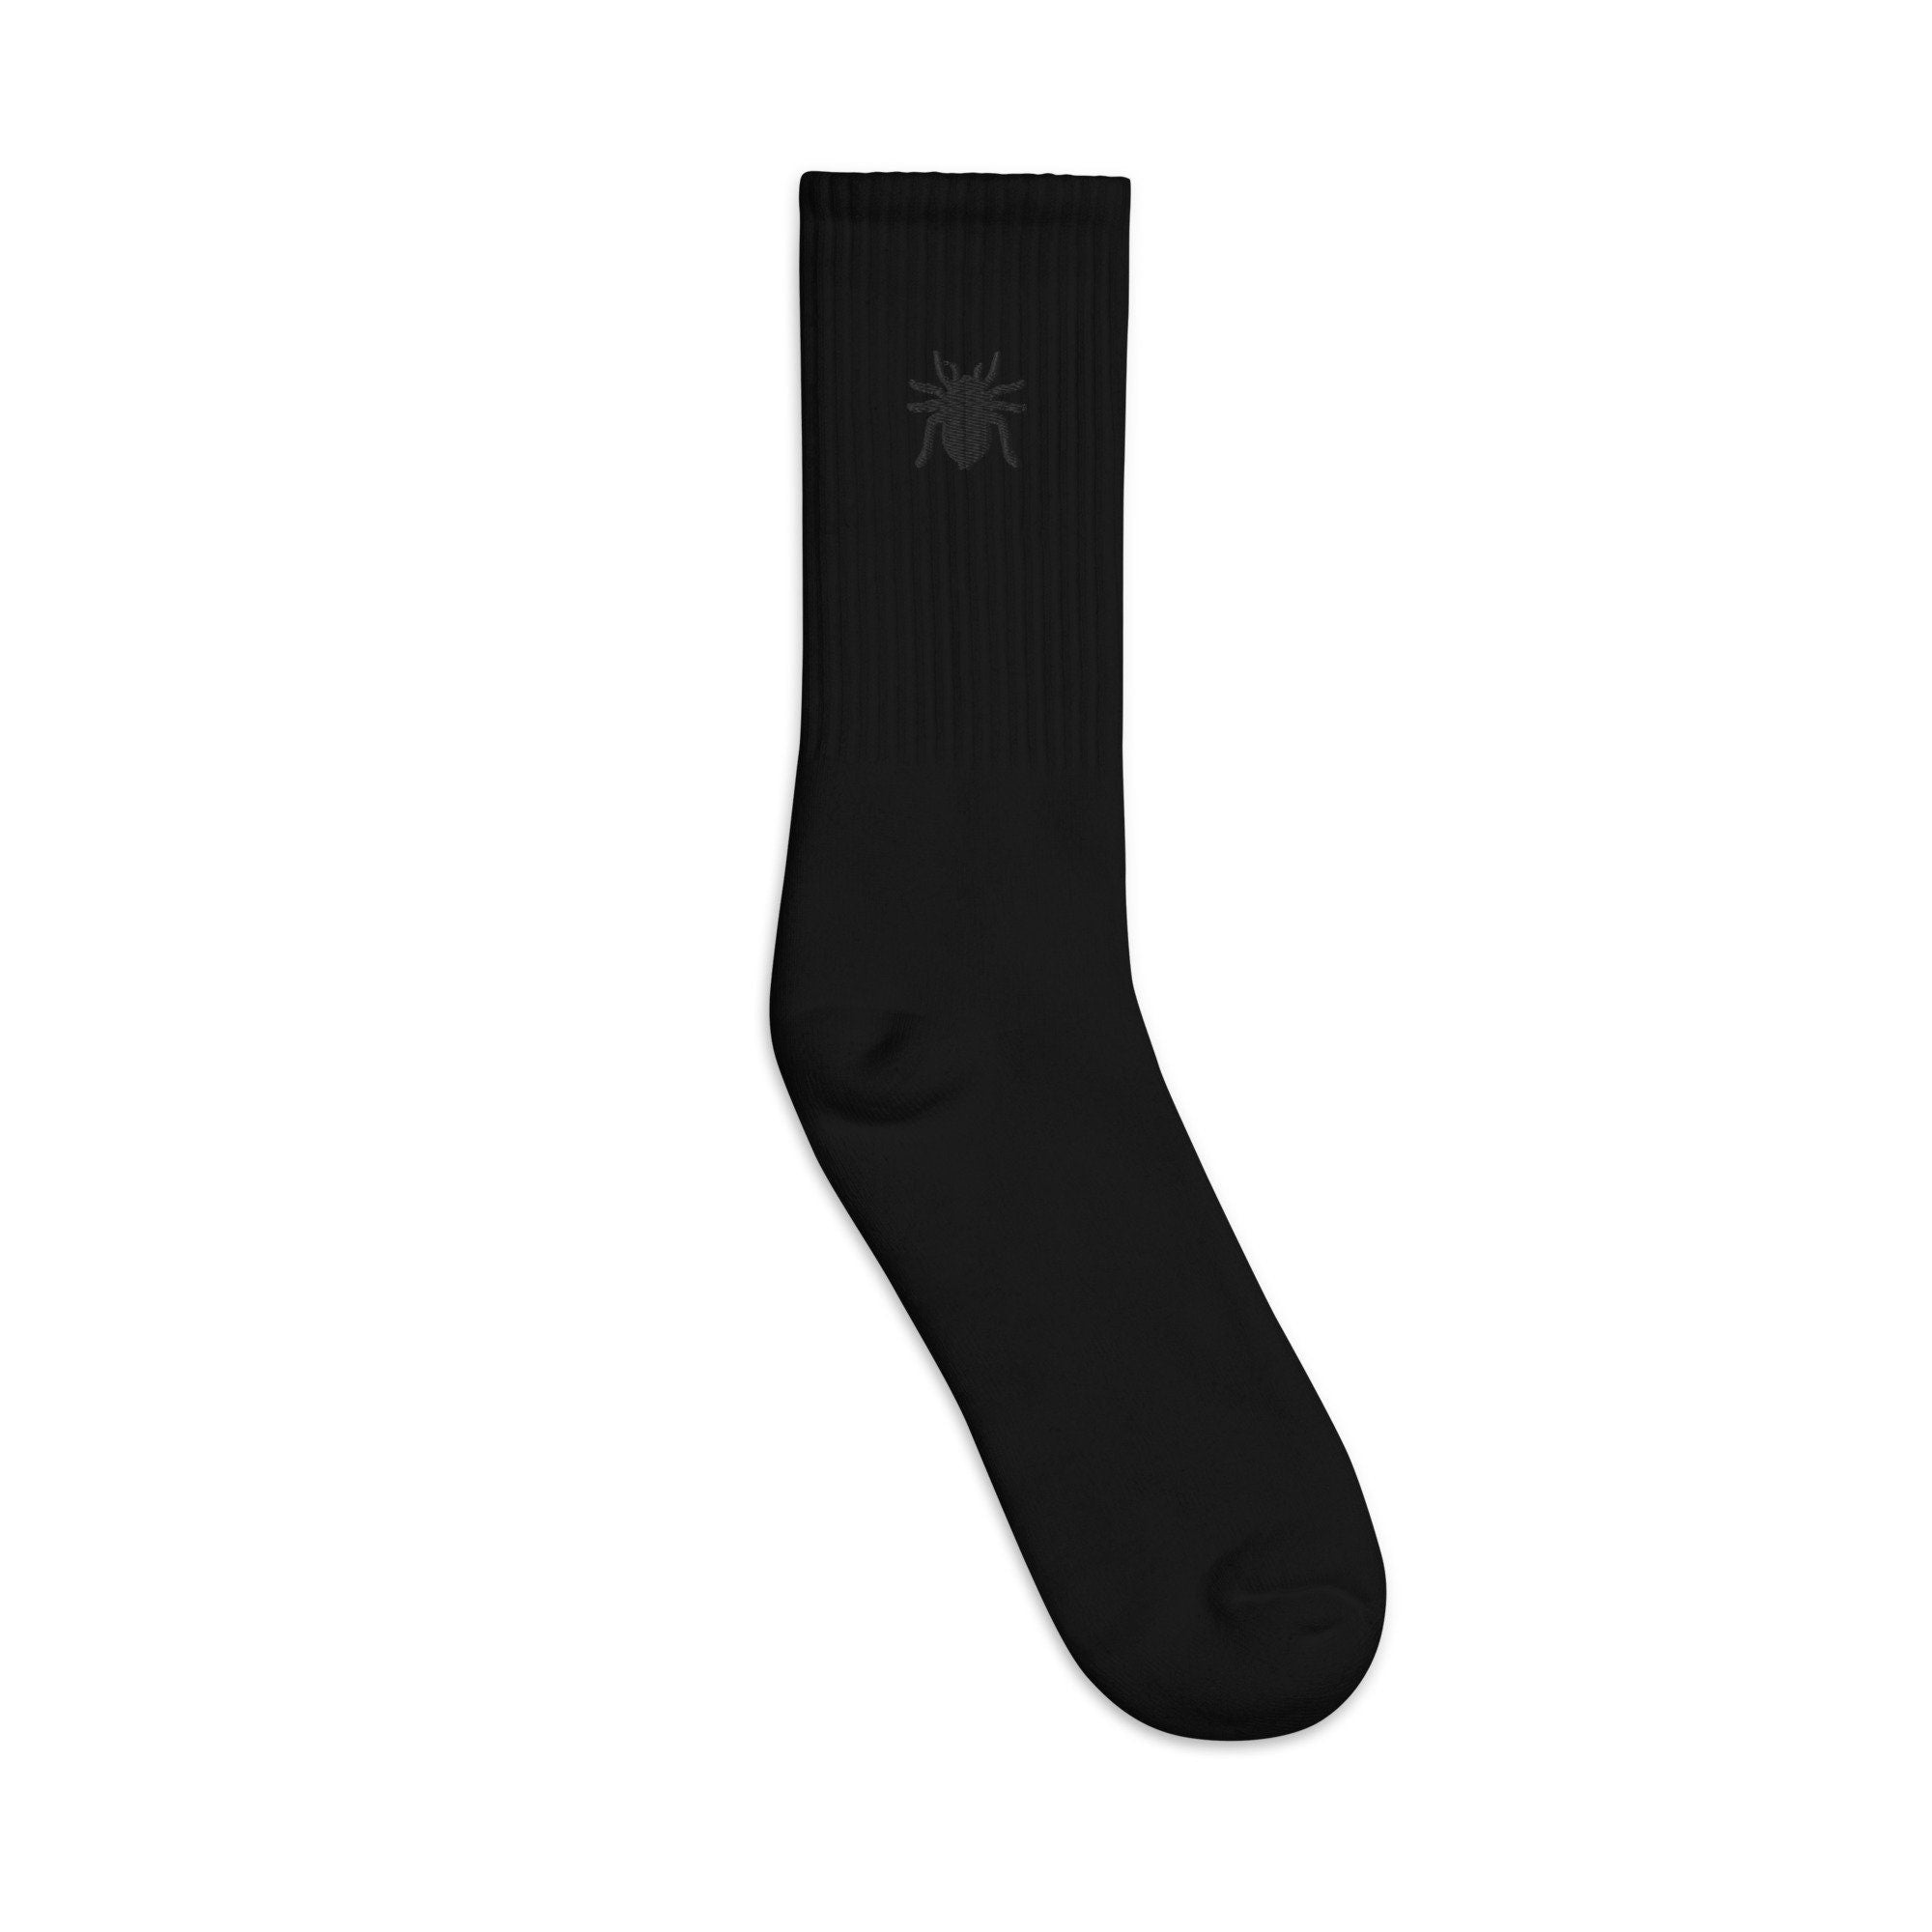 Tarantula Embroidered Socks, Premium Embroidered Socks, Long Socks Gift - Multiple Colors